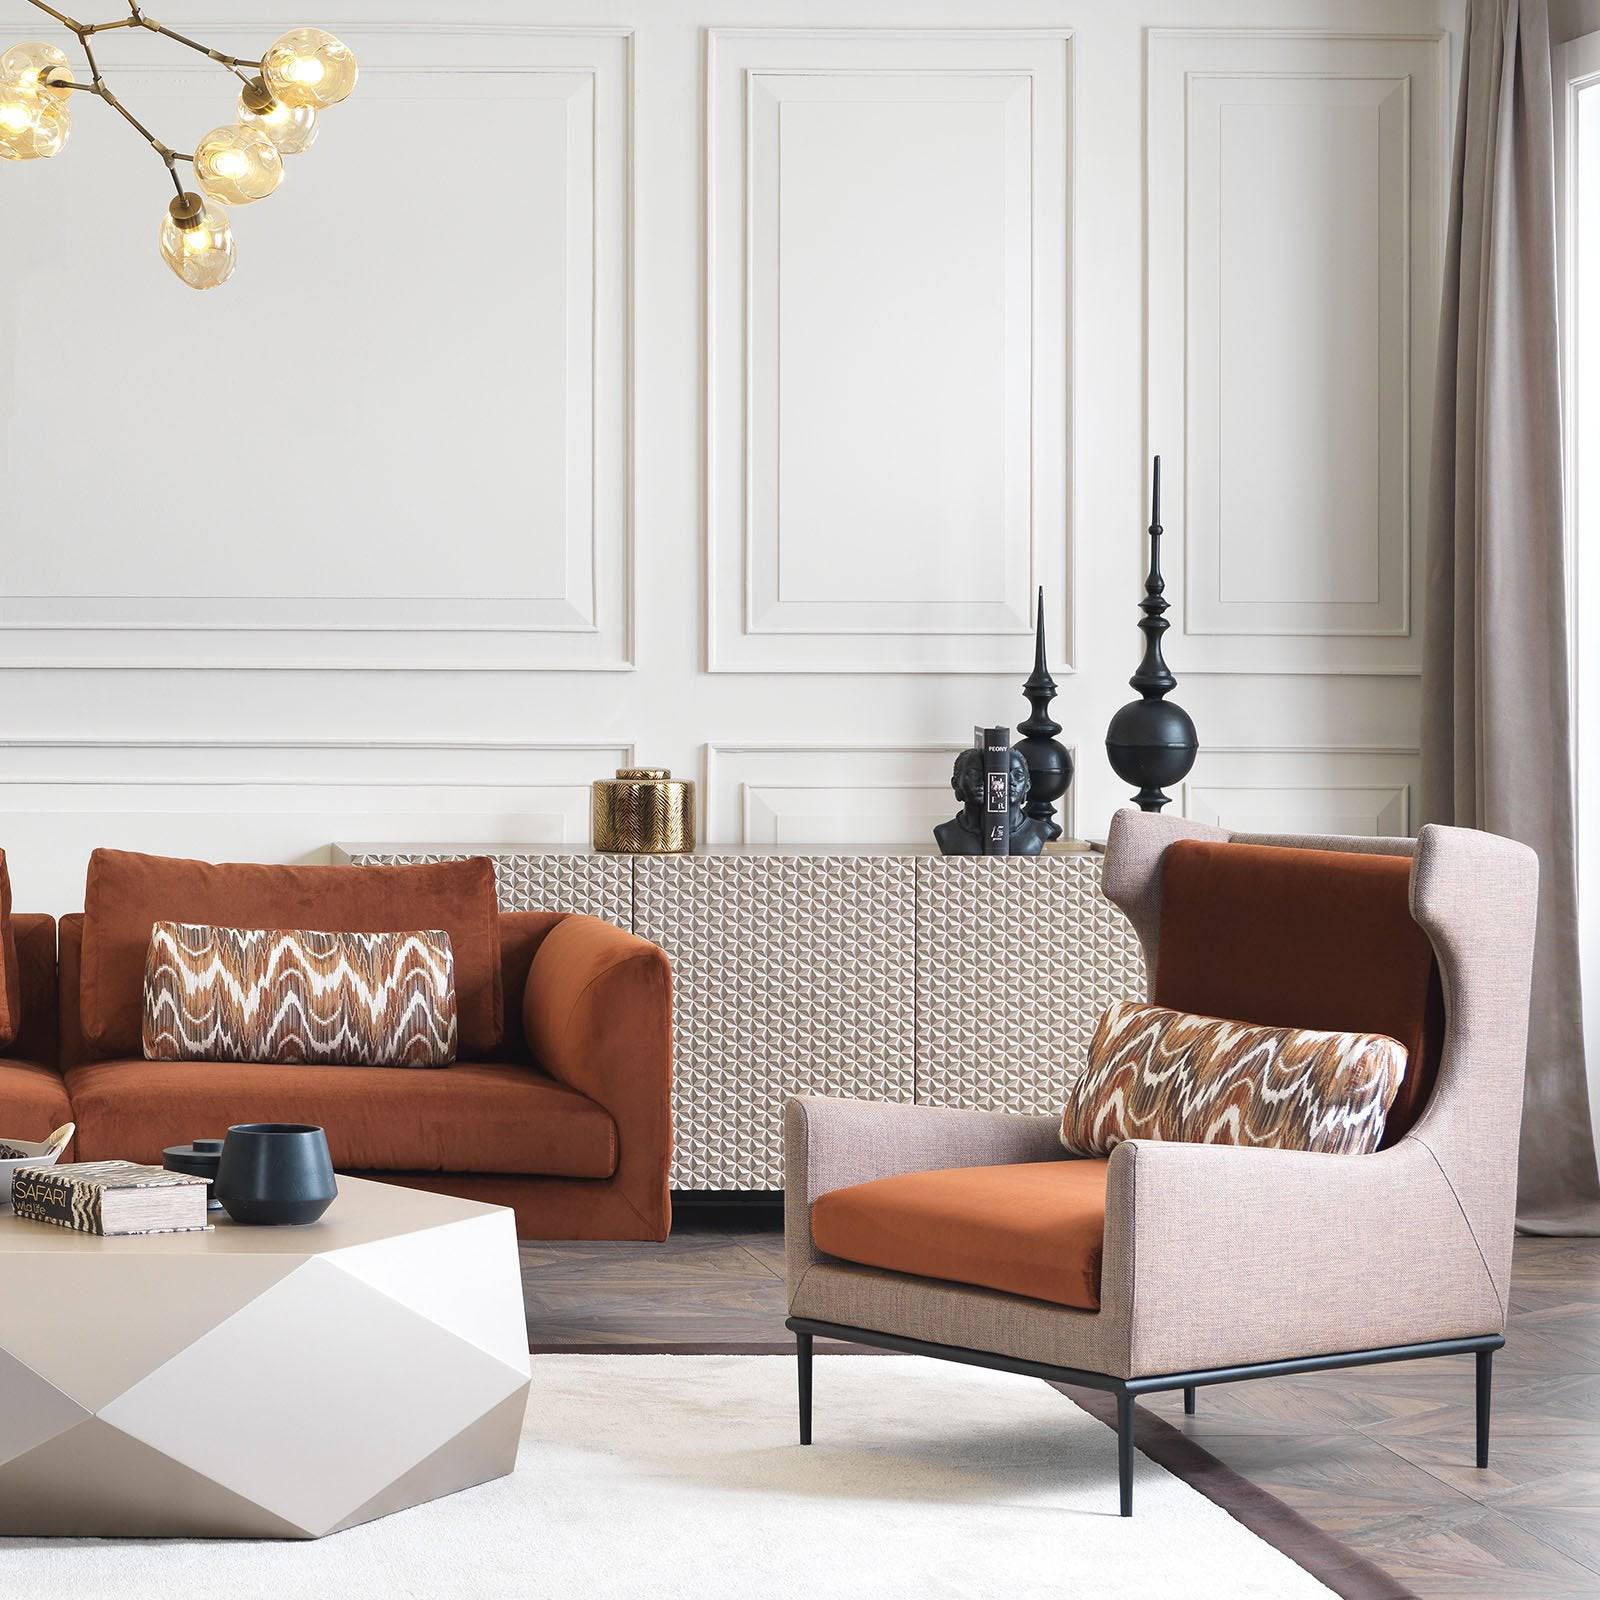 Vittoria Lounge Chair Vittoria001 -  Lounge Chairs | كرسي صاله من فيتوريا - ebarza Furniture UAE | Shop Modern Furniture in Abu Dhabi & Dubai - مفروشات ايبازرا في الامارات | تسوق اثاث عصري وديكورات مميزة في دبي وابوظبي